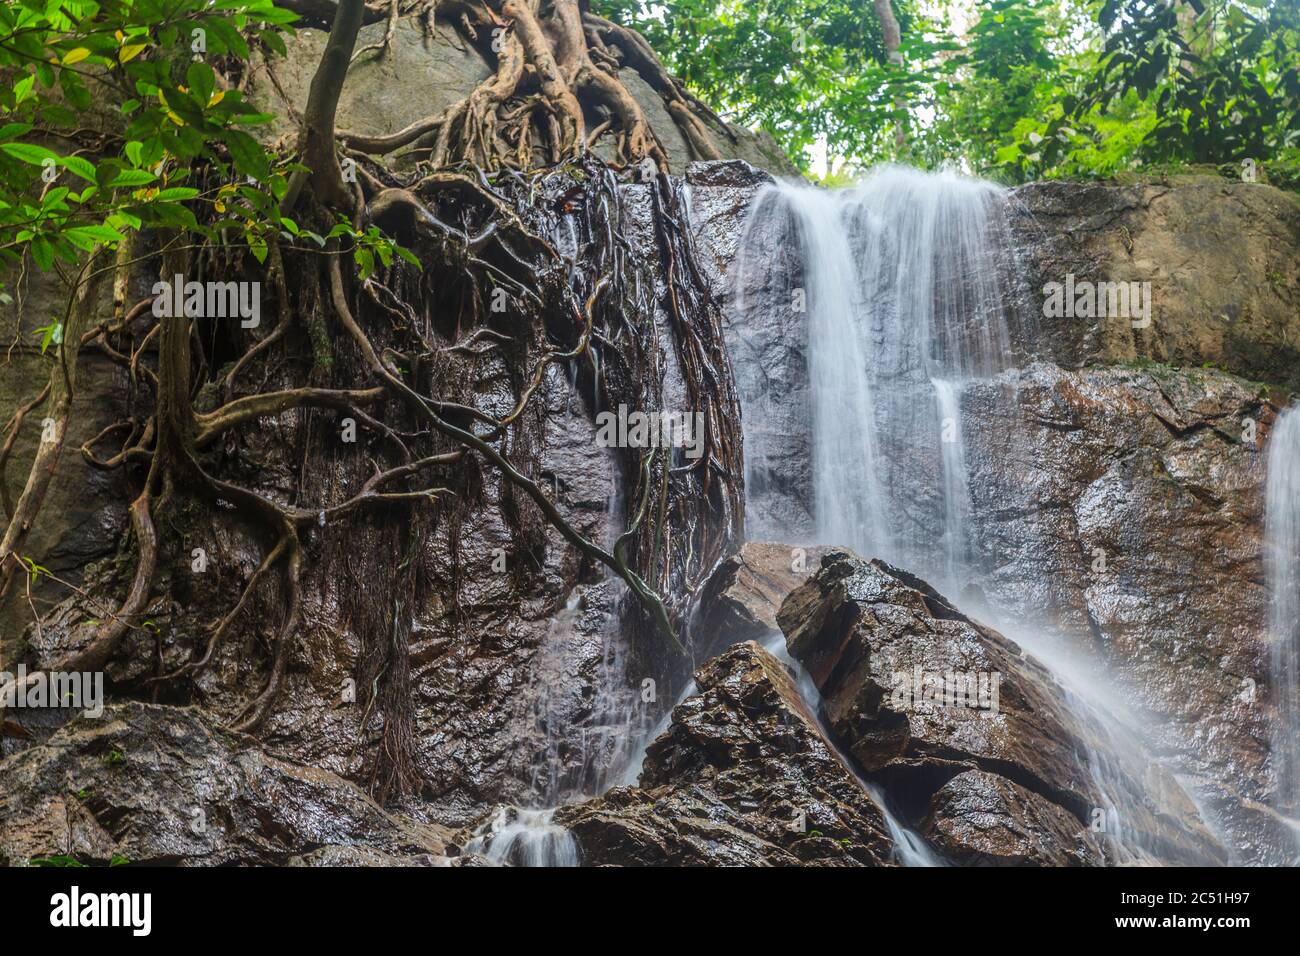 Foto de una cascada en la Reserva de vida Silvestre Krau en Malasia fotografiada durante el día con un largo tiempo de exposición en noviembre de 2013 Foto de stock